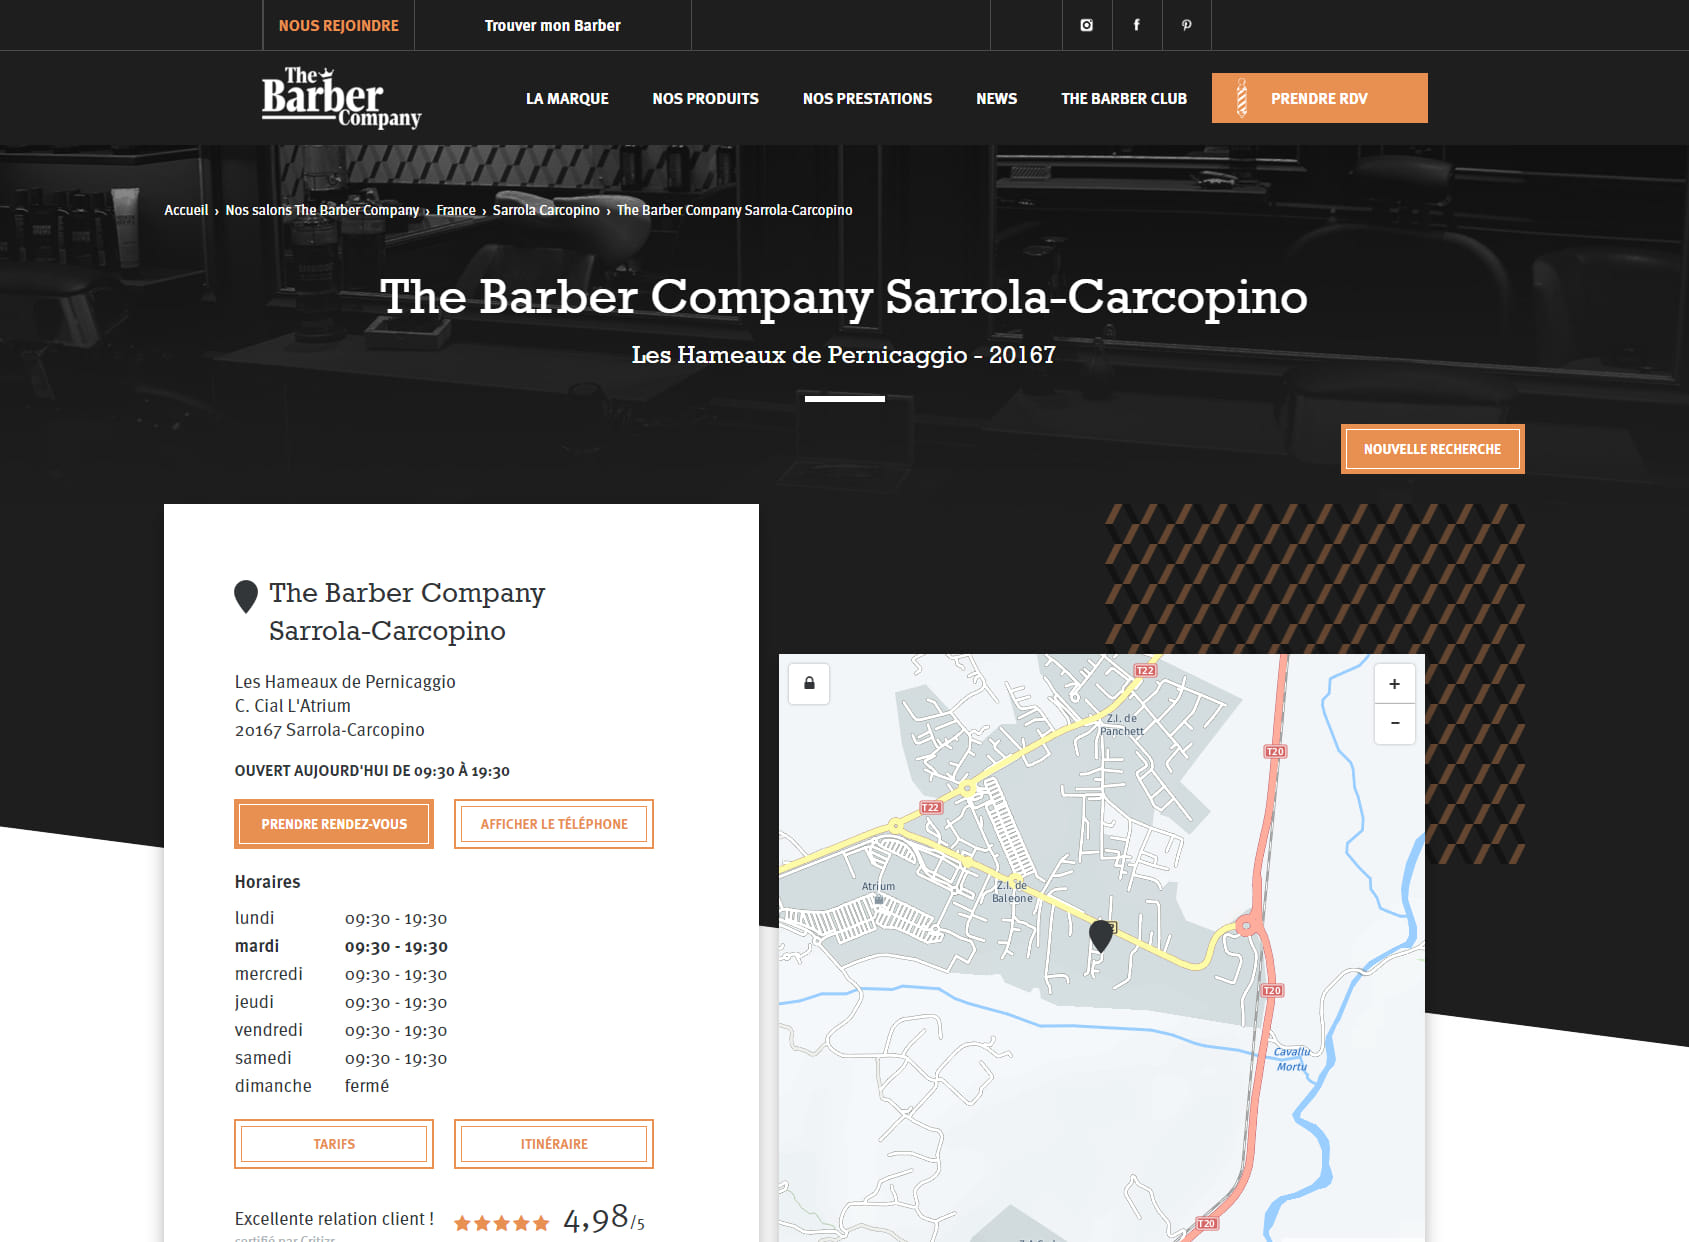 The Barber Company - Coiffeur Barbier Sarrola-Carcopino